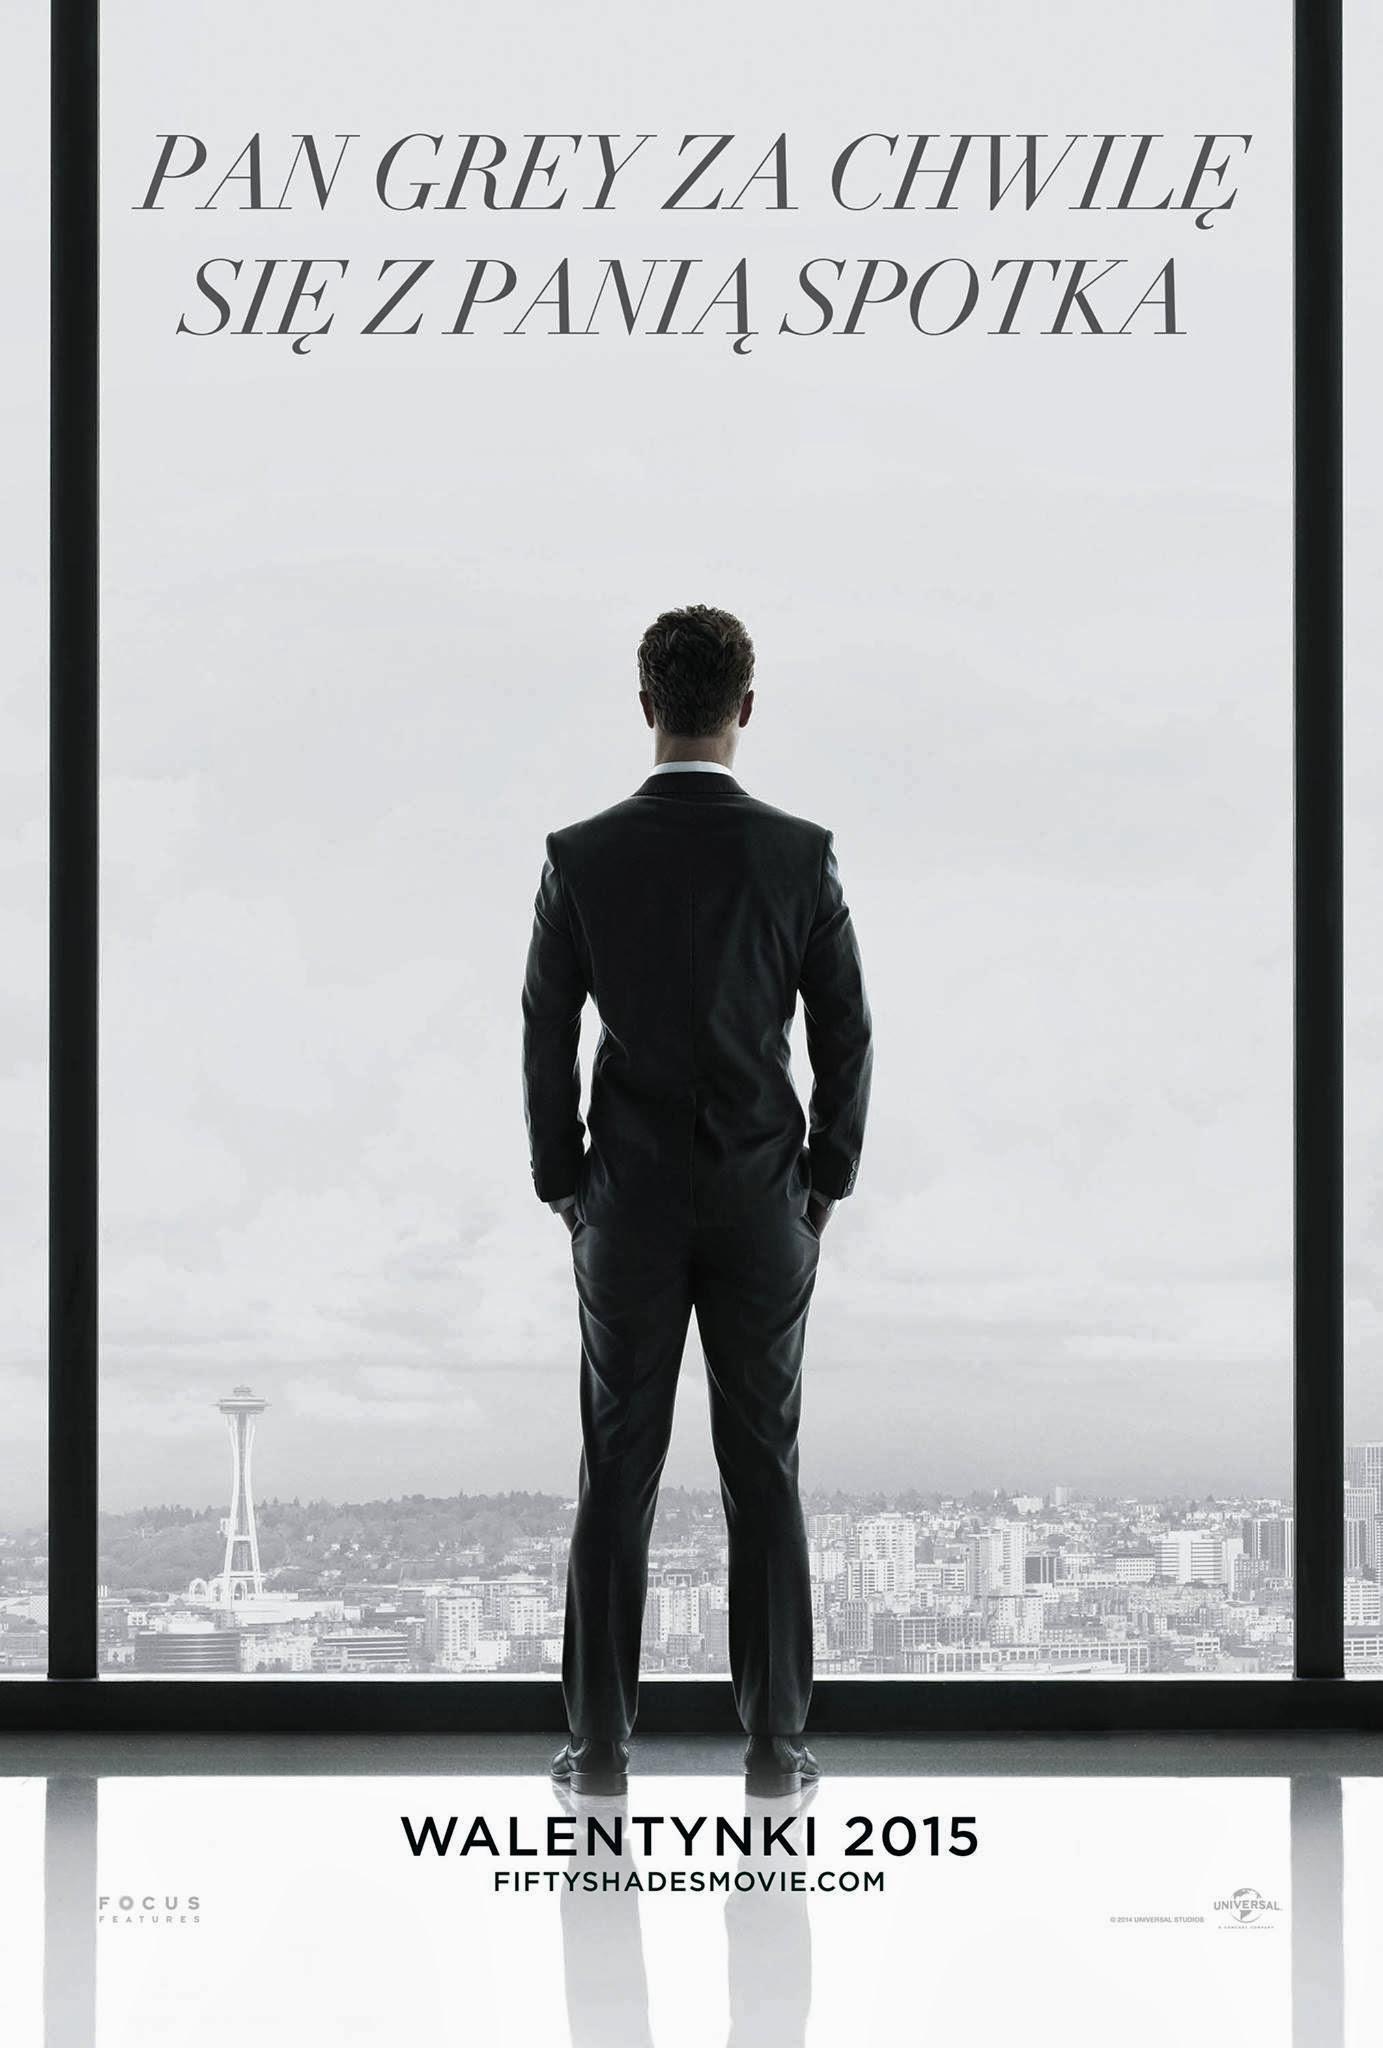 Постер фильма Пятьдесят оттенков серого | Fifty Shades of Grey